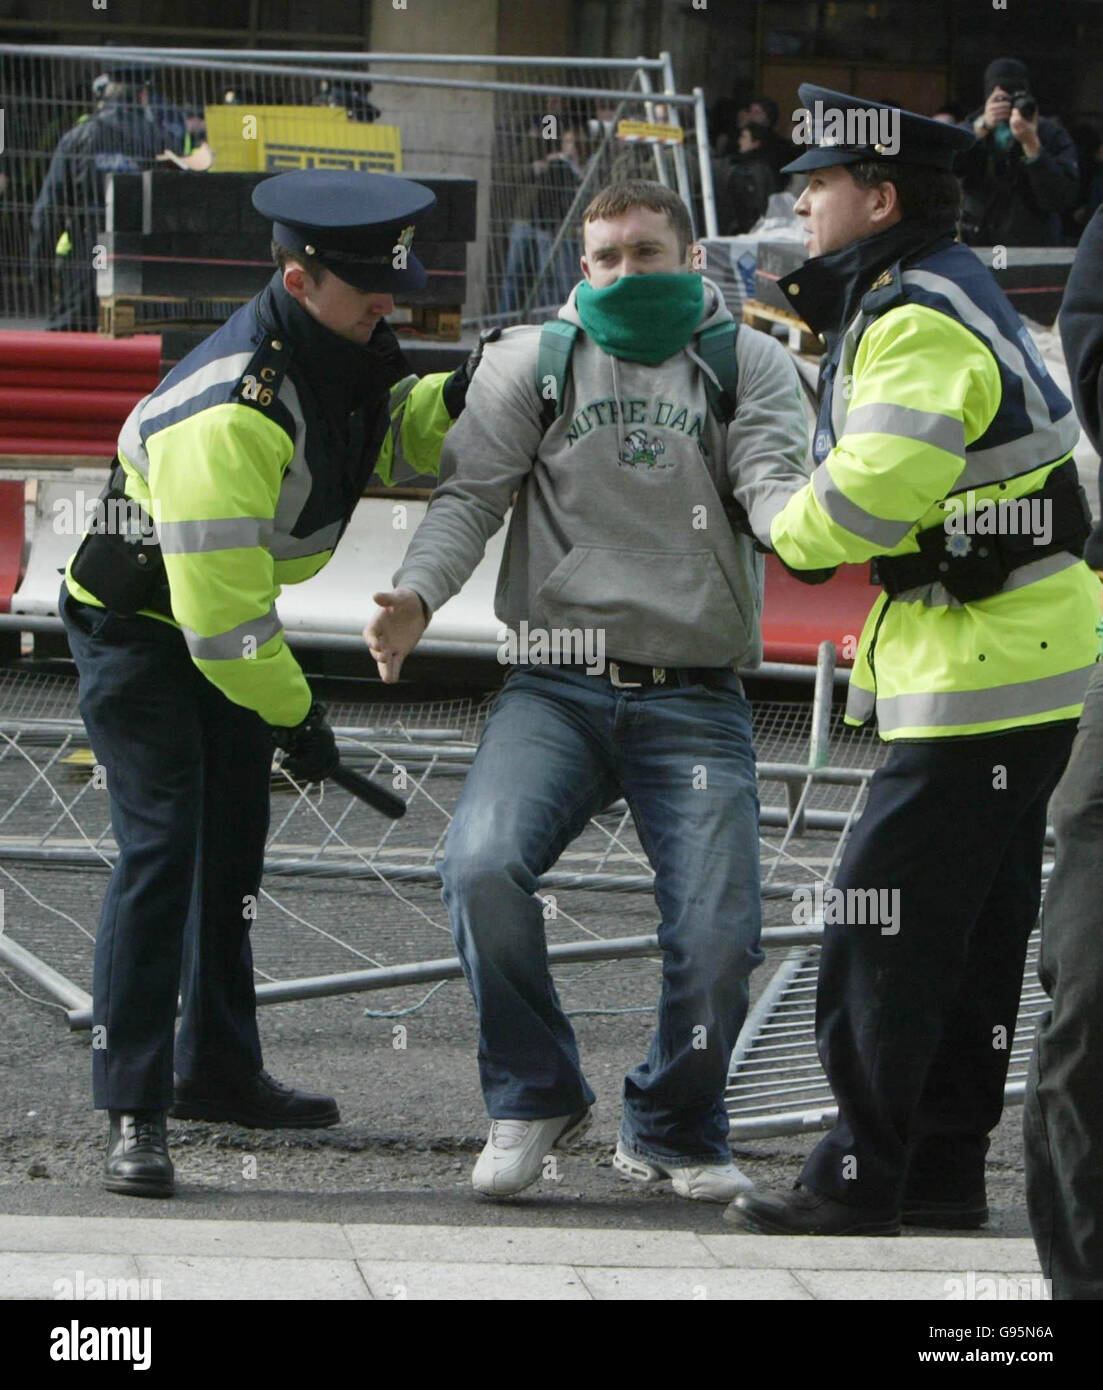 Centinaia di manifestanti repubblicani si scontrano con la polizia antisommossa nel centro di Dublino per bloccare una sfilata dell'Ordine arancione e delle vittime della violenza dell'IRA, sabato 25 febbraio 2006. Circa una dozzina di fuochi d'artificio, barricate di metallo, bottiglie e pietre sono stati gettati a Gardai come marchers lealisti si sono riuniti a 100 metri di distanza. Due Gardai hanno subito lesioni alla testa mentre i fuochi d'artificio sono esplosi. Decine di Gardai extra in attrezzatura piena rivolta sono stati chiamati in un tentativo di sedare i disordini. Vedi la storia della PA IRISH Parade. PREMERE ASSOCIAZIONE foto. Il credito fotografico dovrebbe essere: Niall Carson/PA Foto Stock